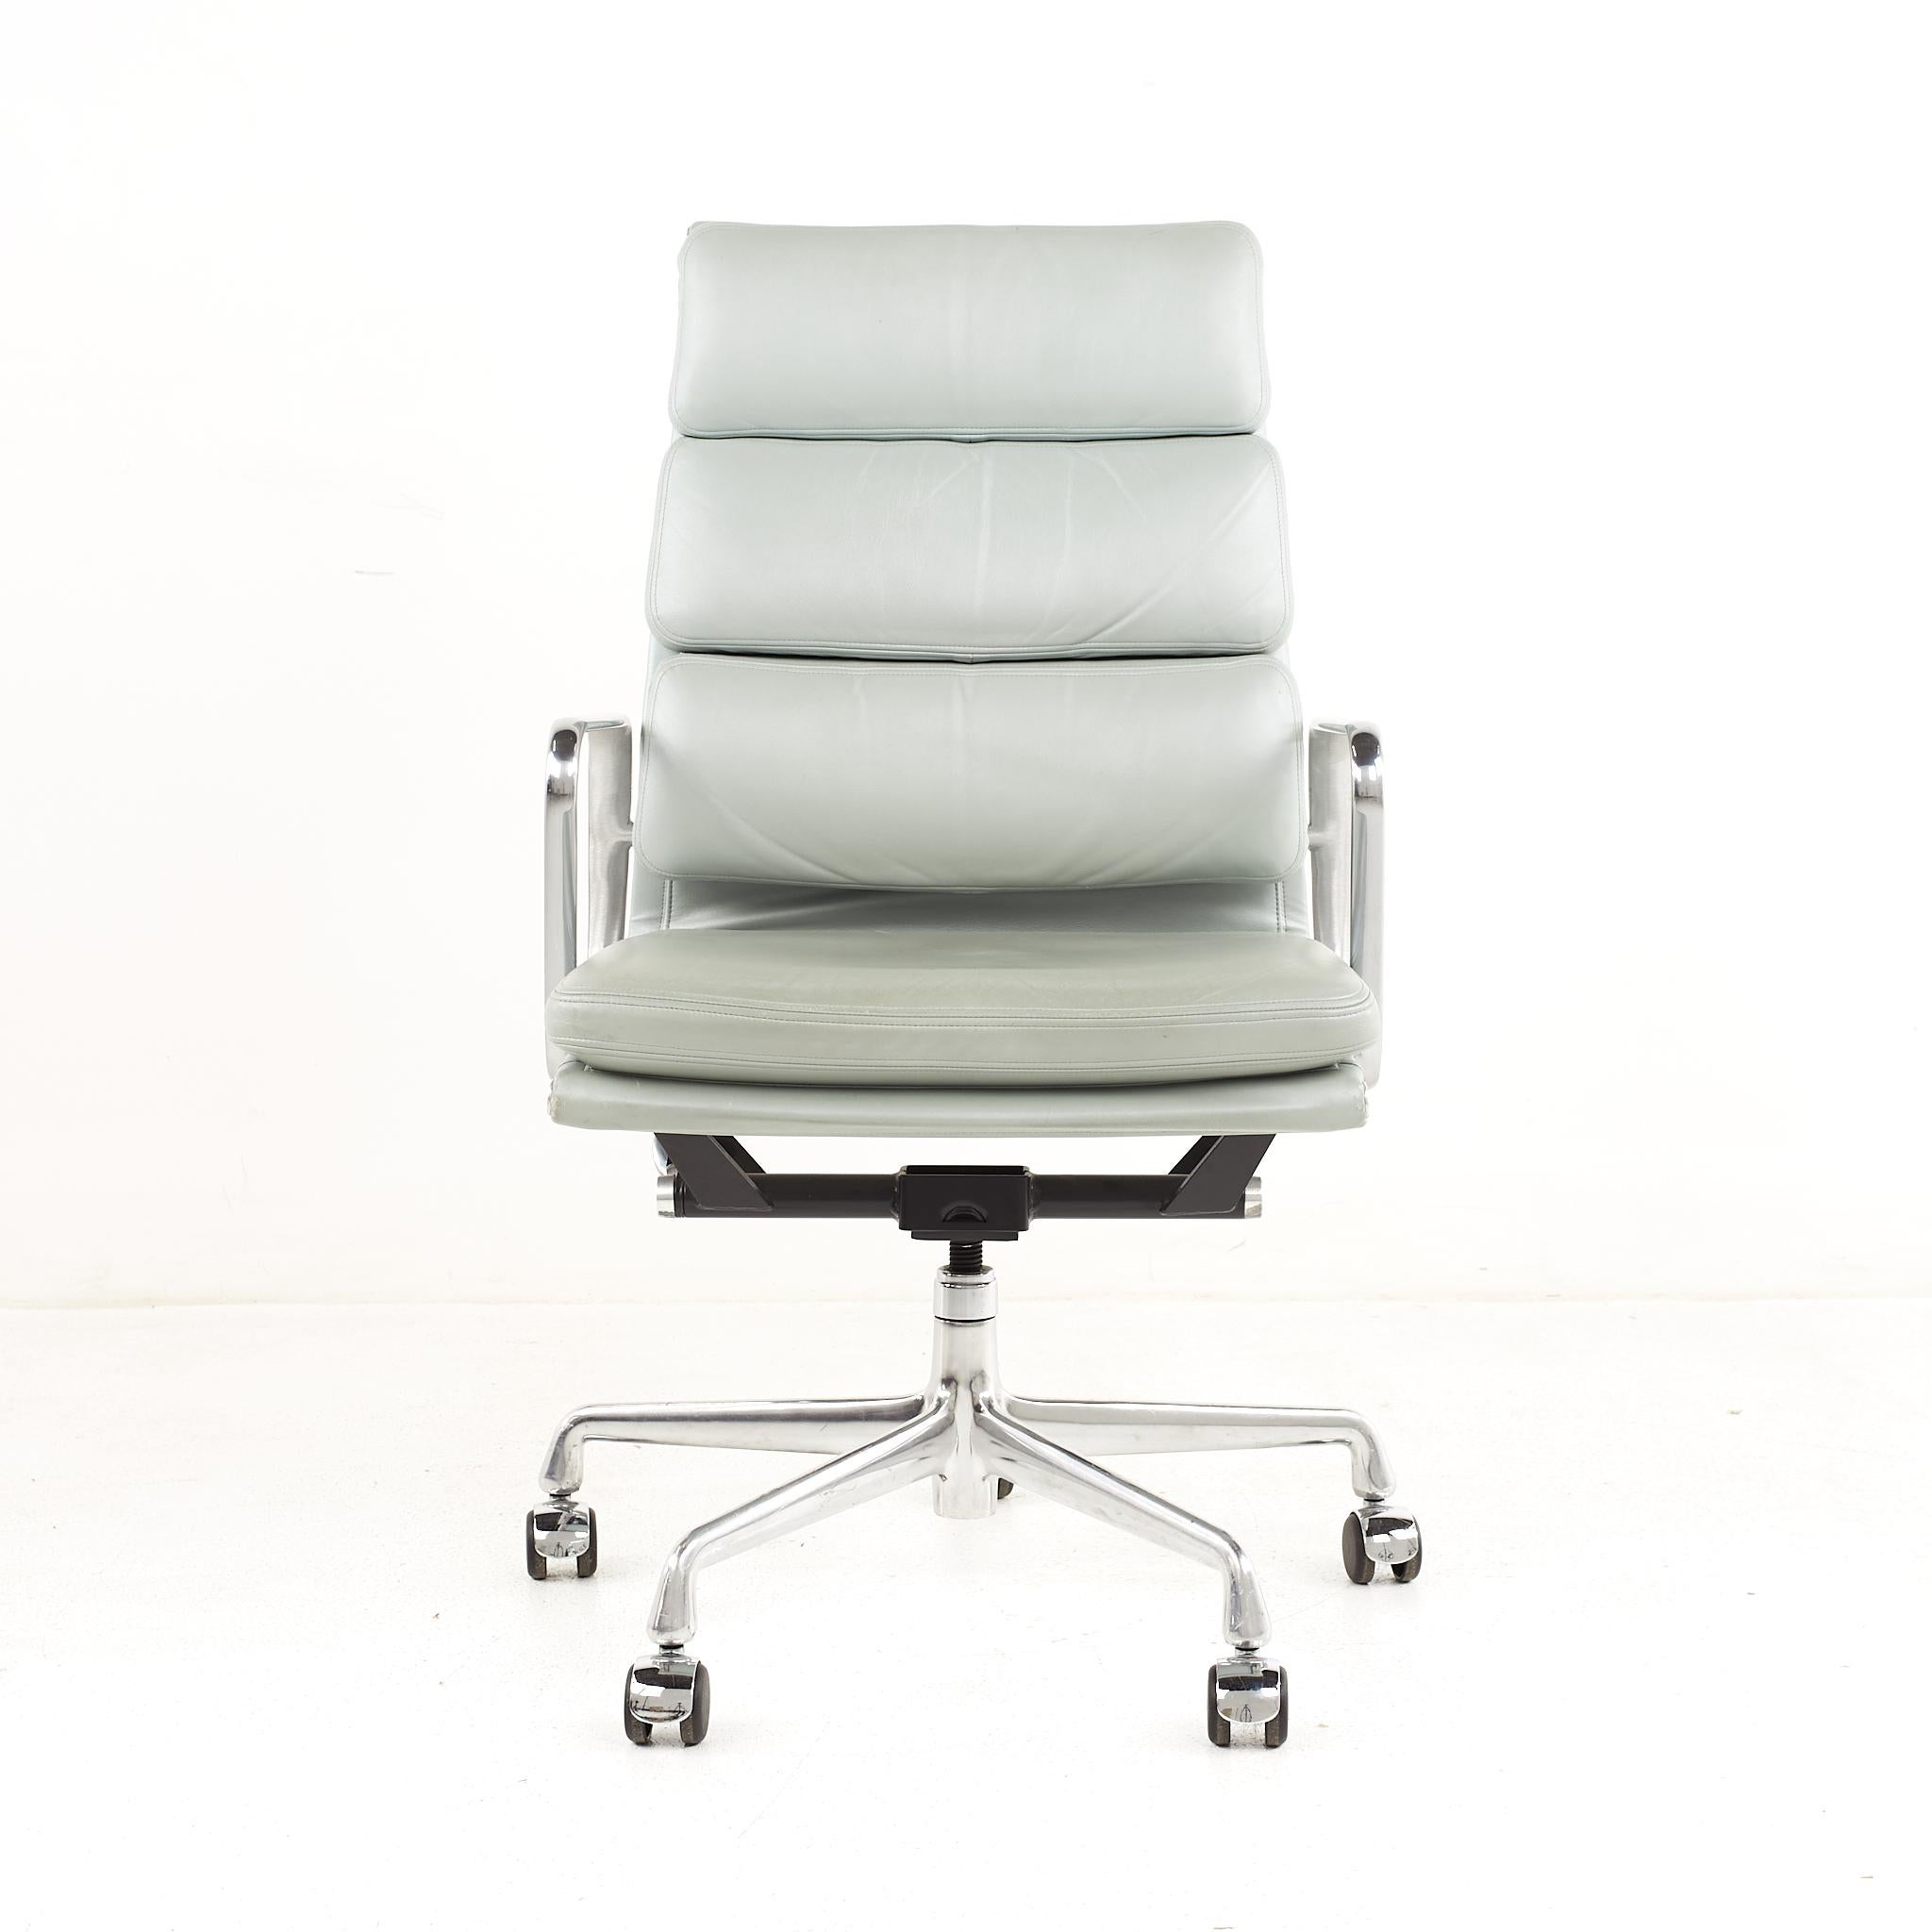 Chaise Eames mid-century soft pad.

La chaise mesure : 22 de large x 20,5 de profond x 39,5 de haut, avec une hauteur d'assise de 19,5 pouces et une hauteur d'accoudoir de 25,25 pouces.

Tous les meubles peuvent être achetés dans ce que nous